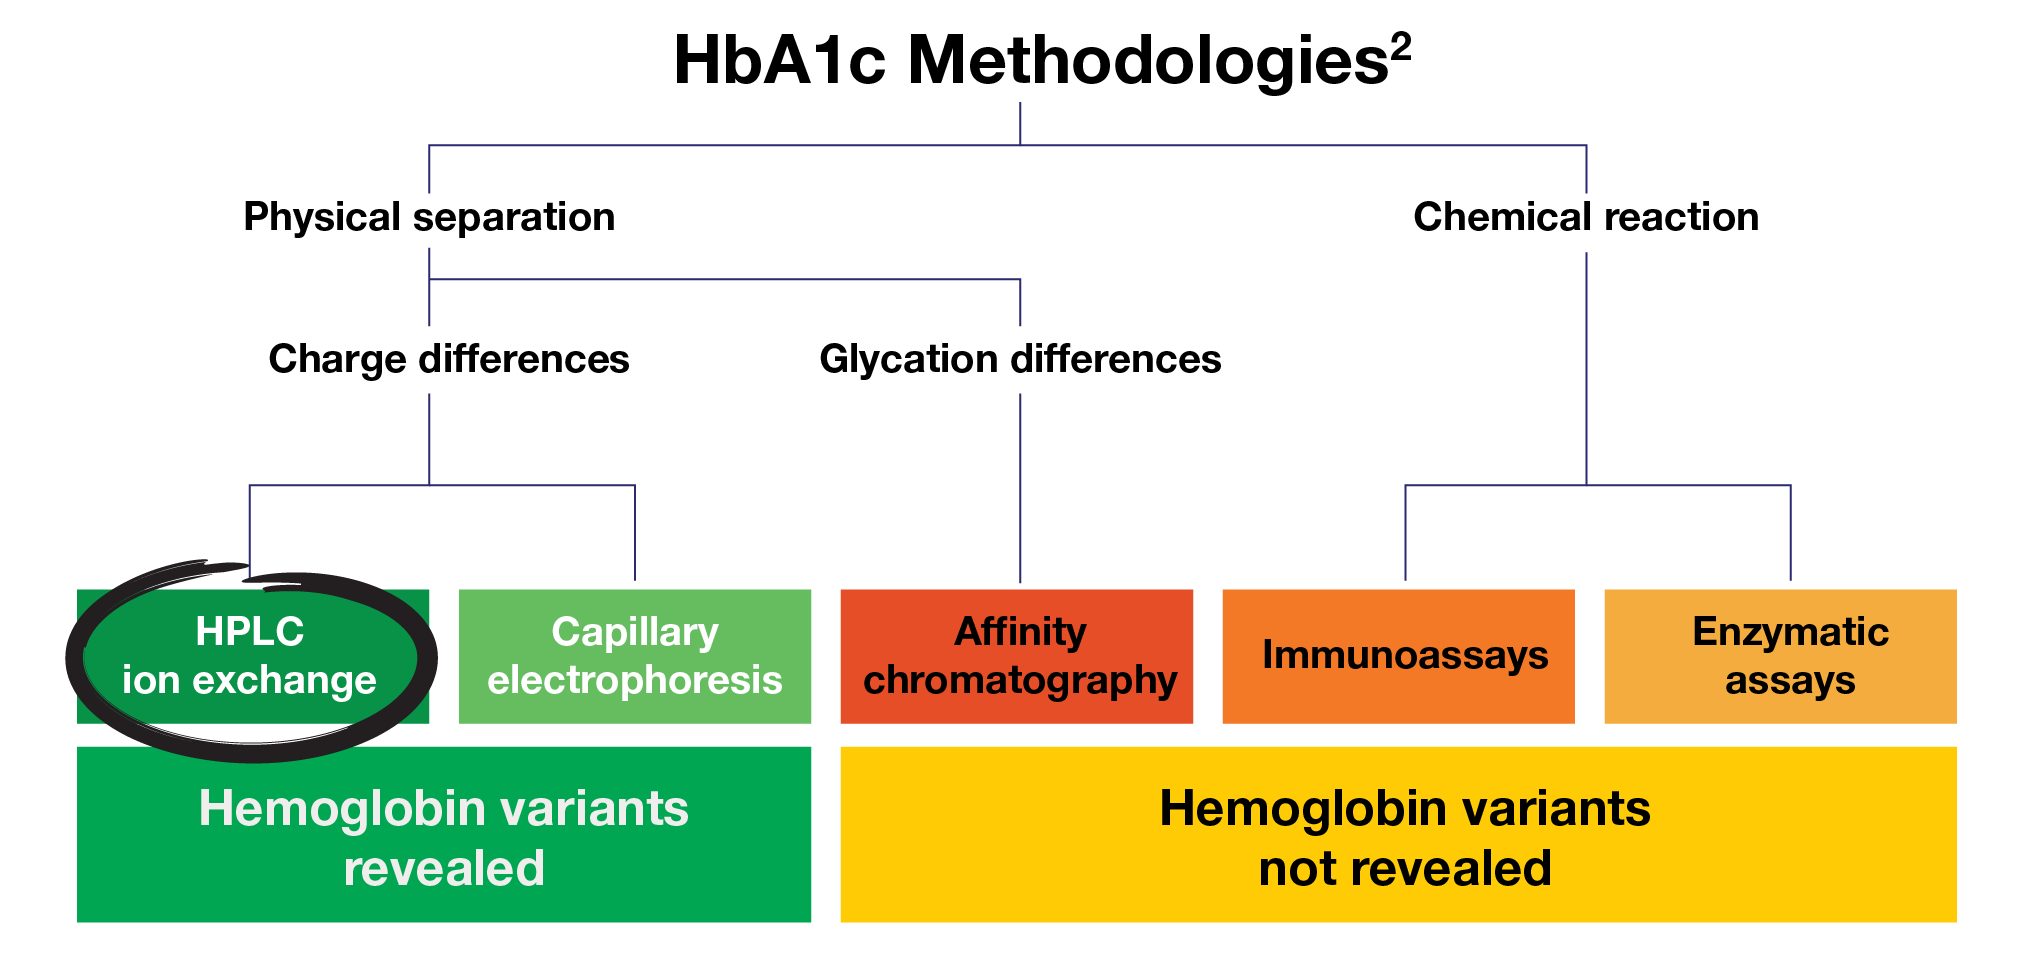 HbA1c Methodologies